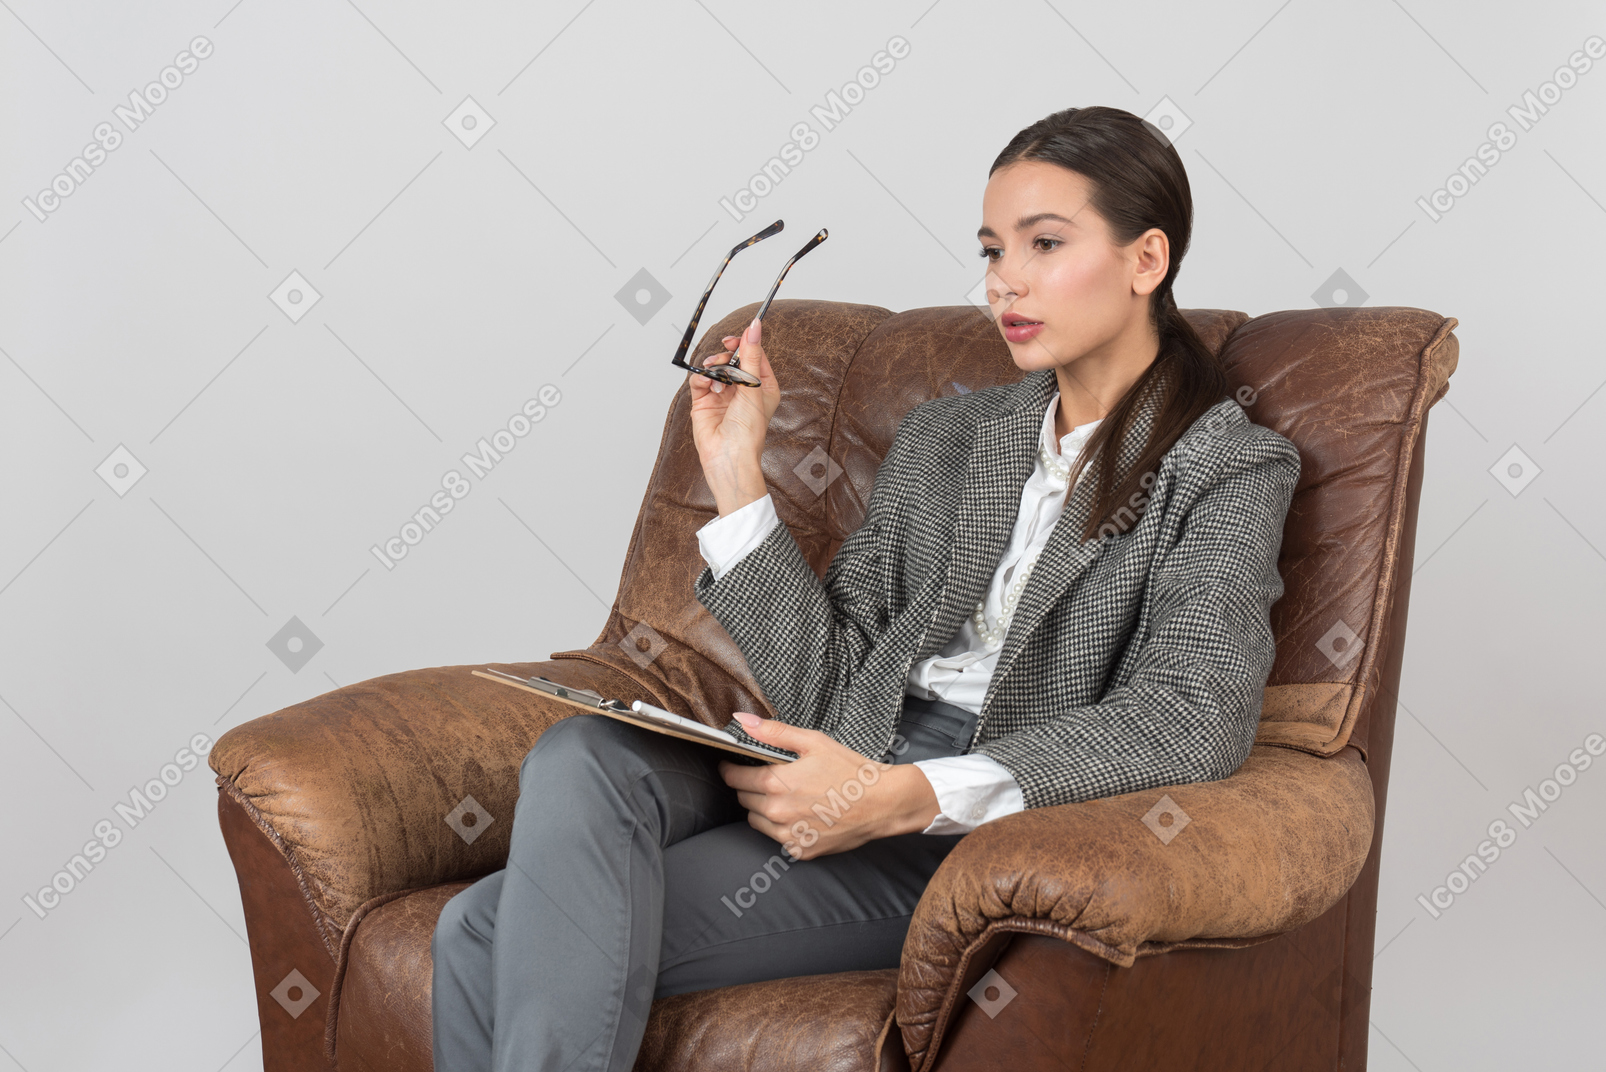 Jeune femme psychologue distrait assis sur une chaise et tenant des lunettes